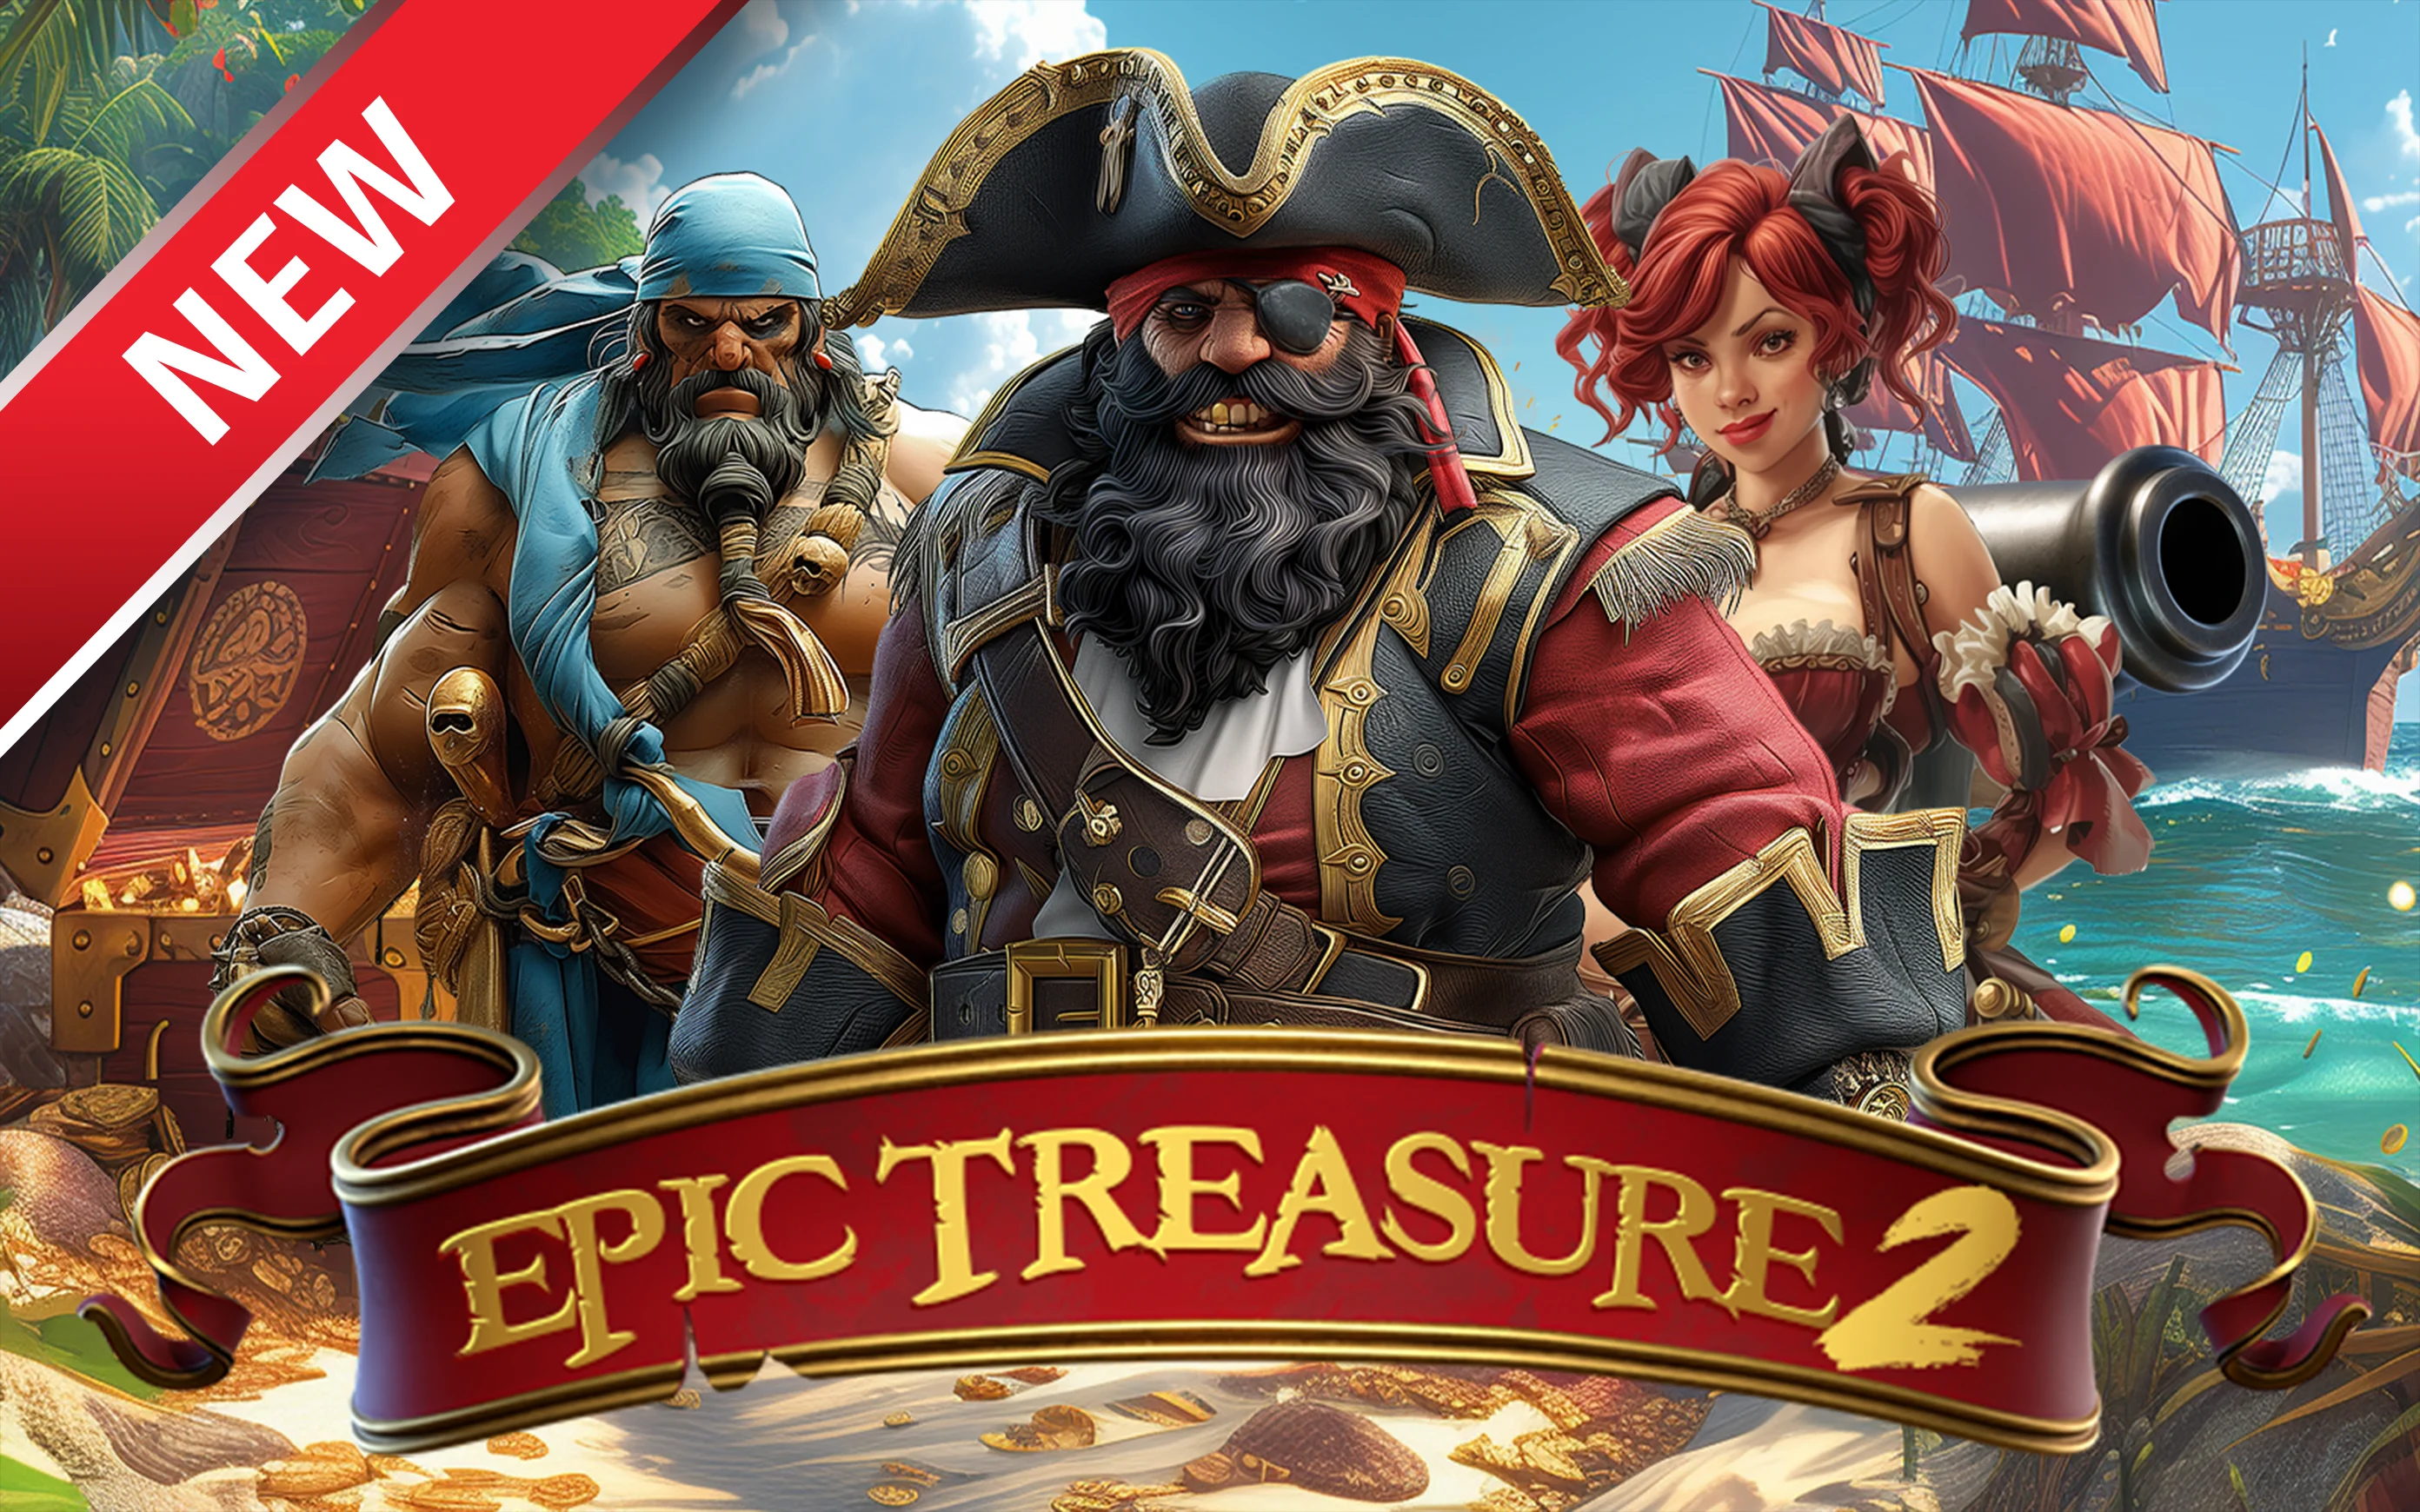 Play Epic Treasure 2 on Starcasino.be online casino